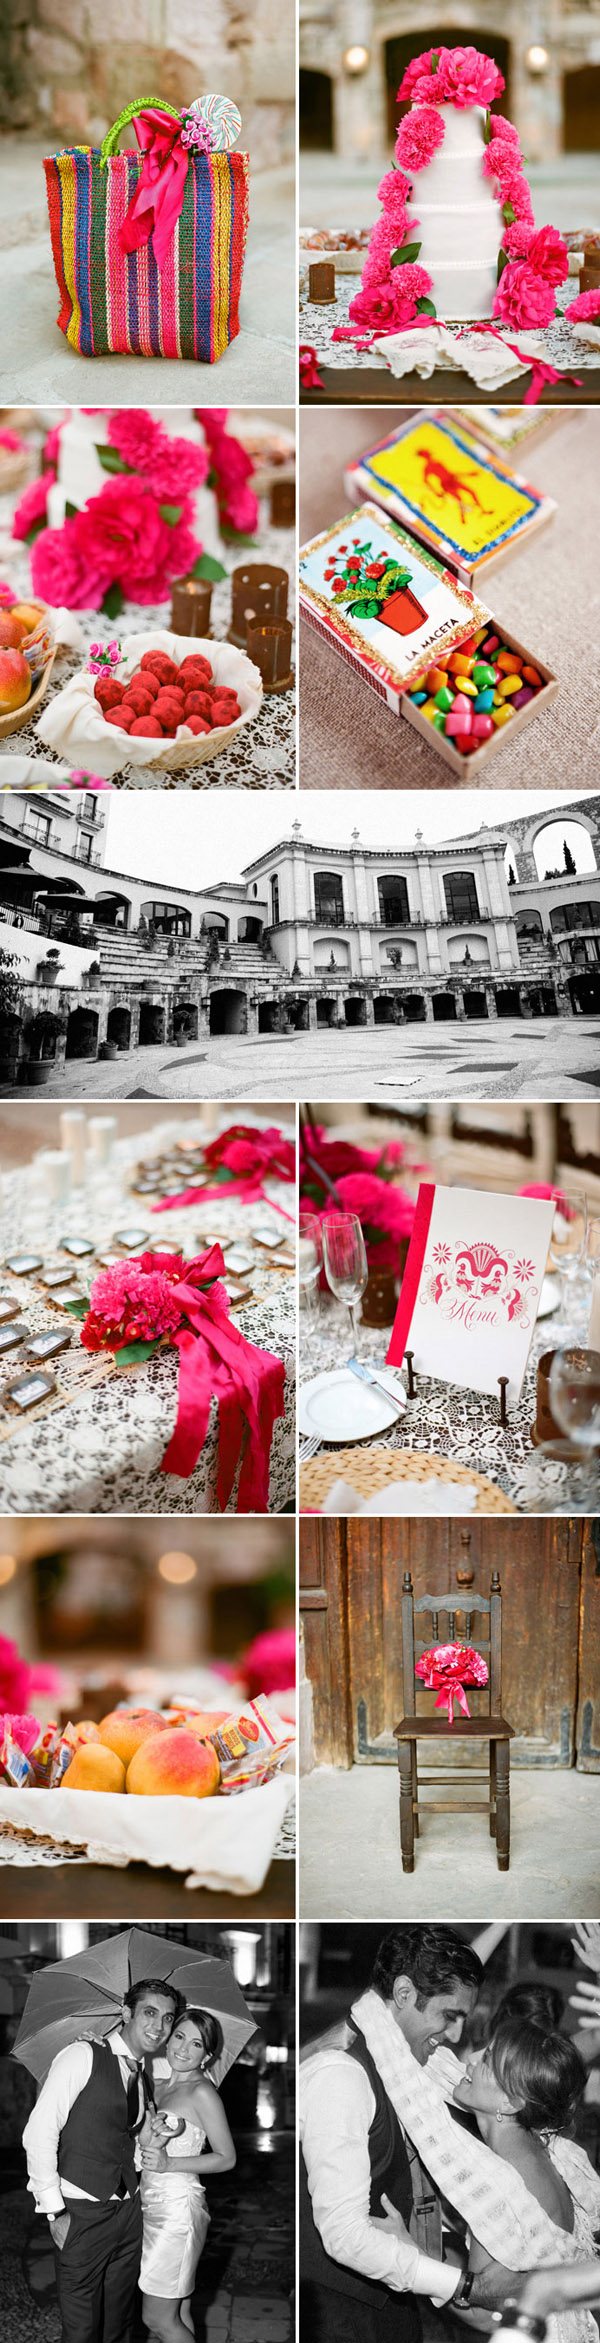 Regina & Zaheen: boda en Zacatecas mexico_11_600x2343 